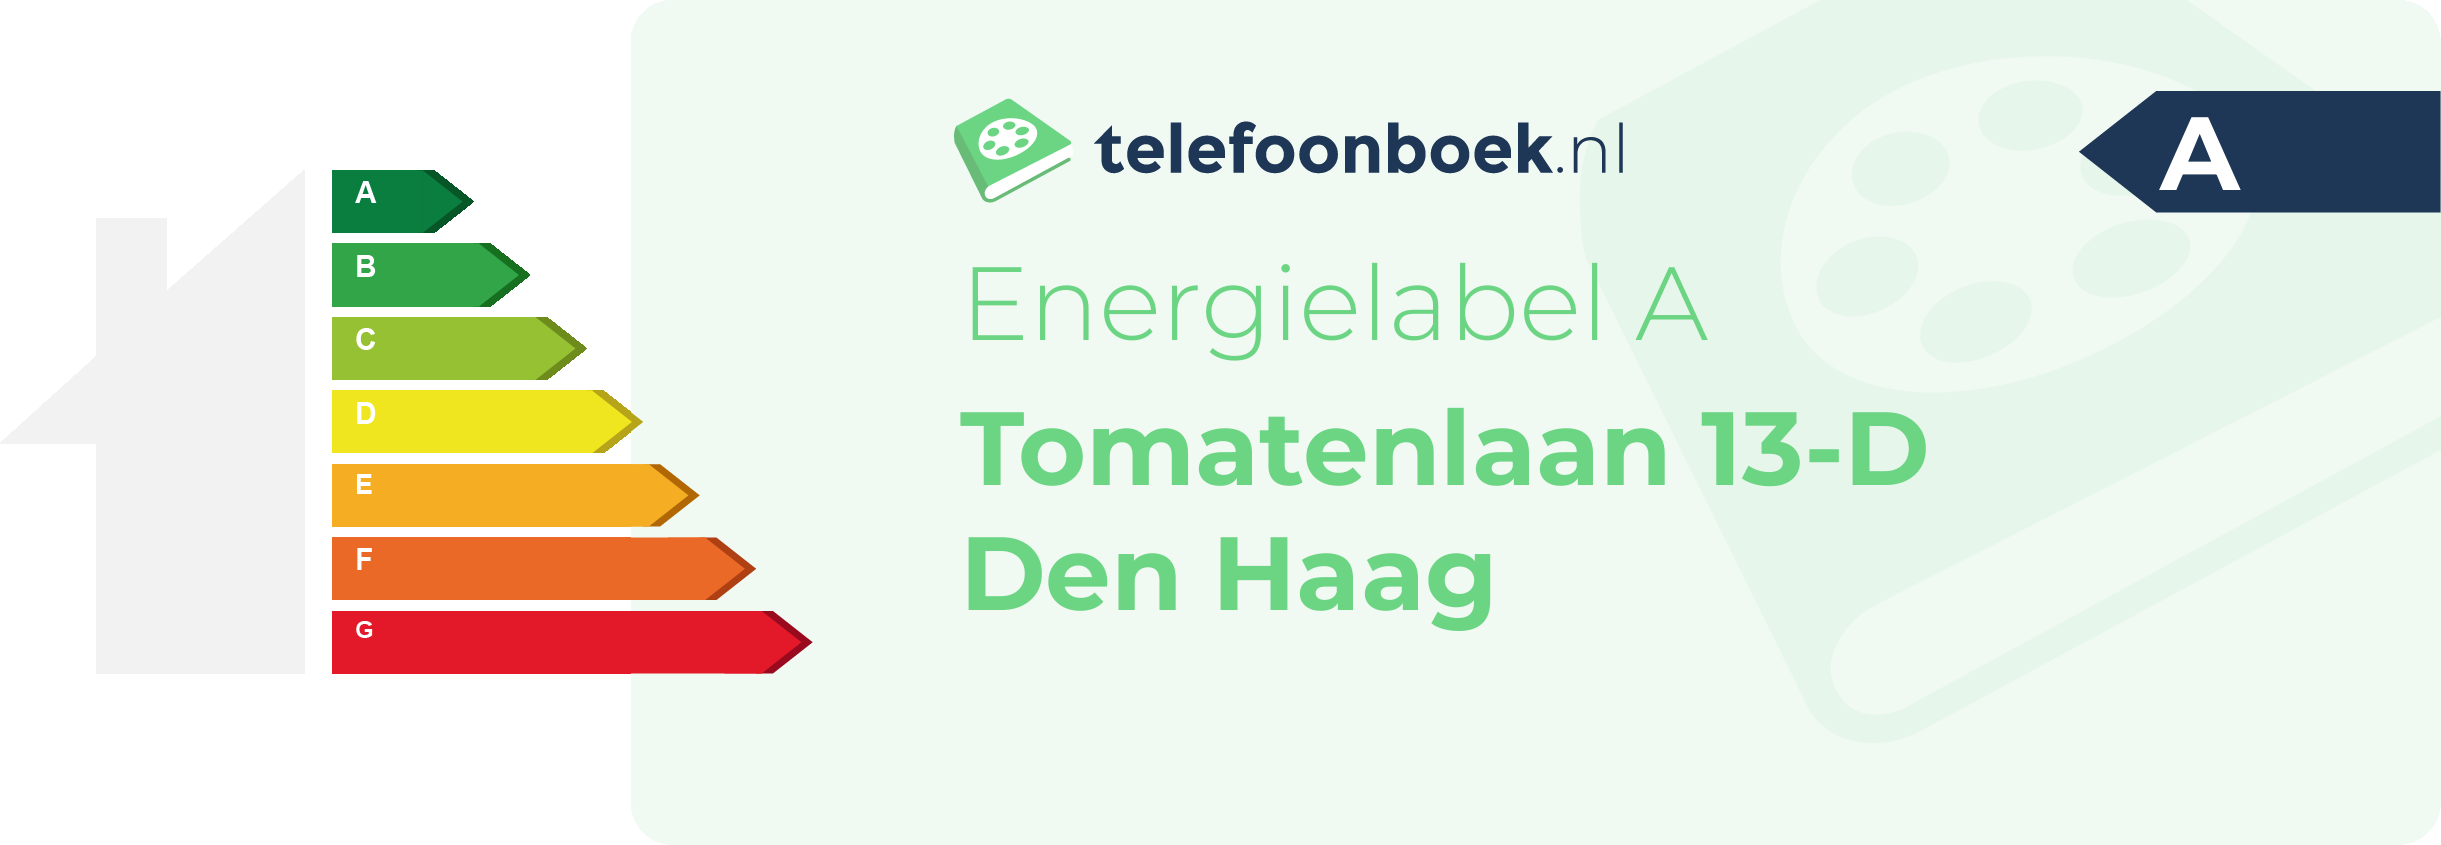 Energielabel Tomatenlaan 13-D Den Haag